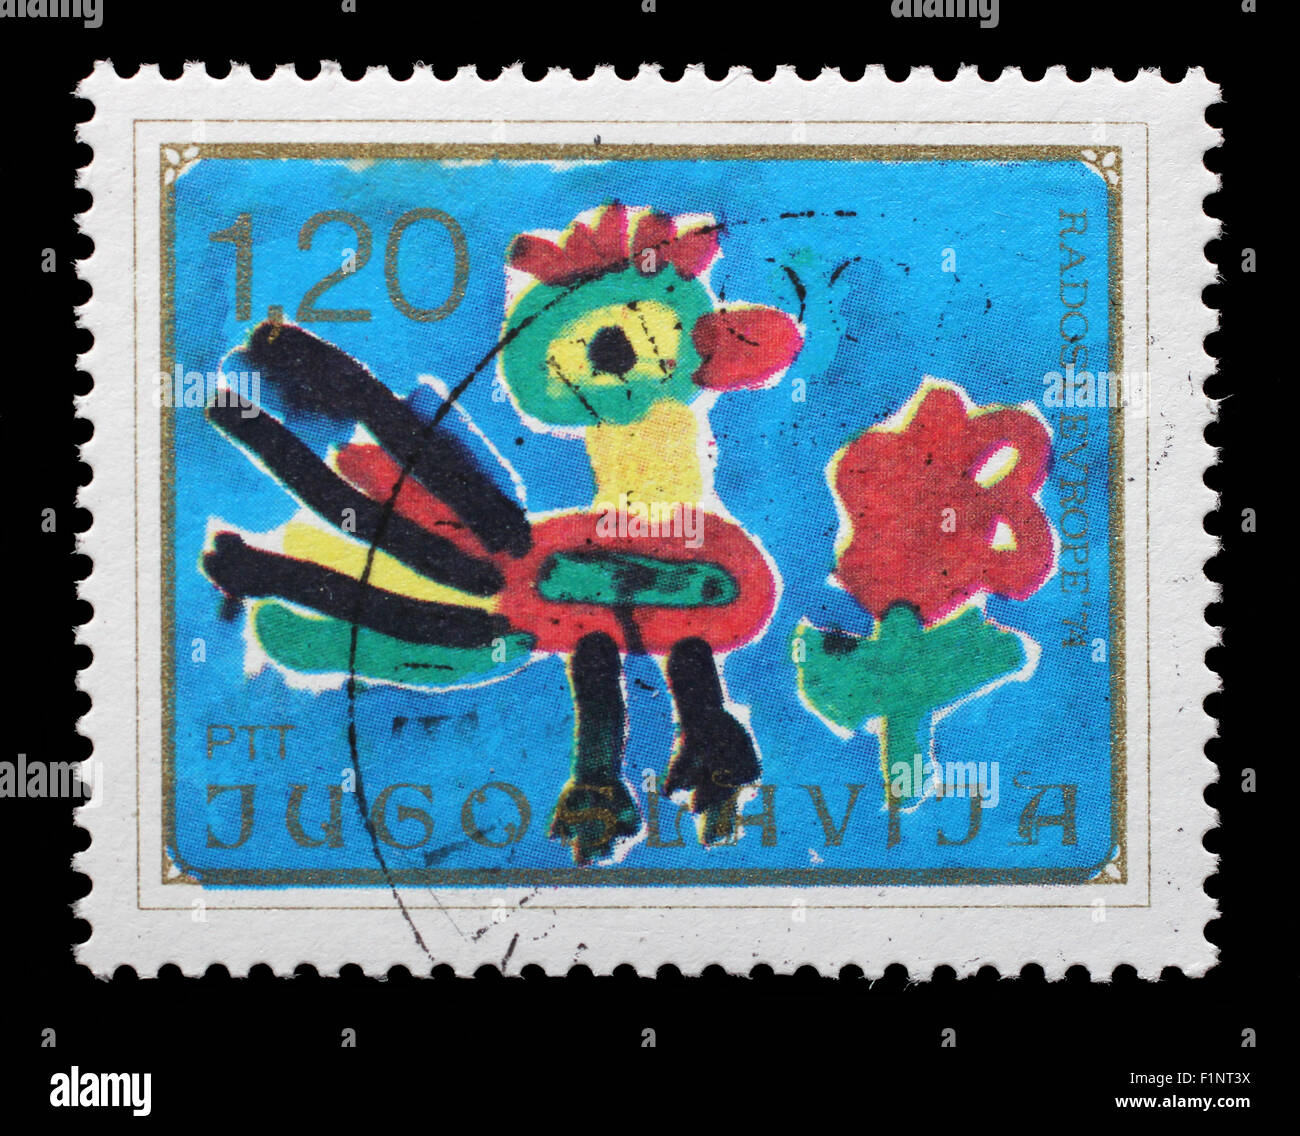 Briefmarke gedruckt in Jugoslawien zeigt Hahn und Blume, Kinder-Zeichnung, Joy of Europe Ausgabe, ca. 1974. Stockfoto